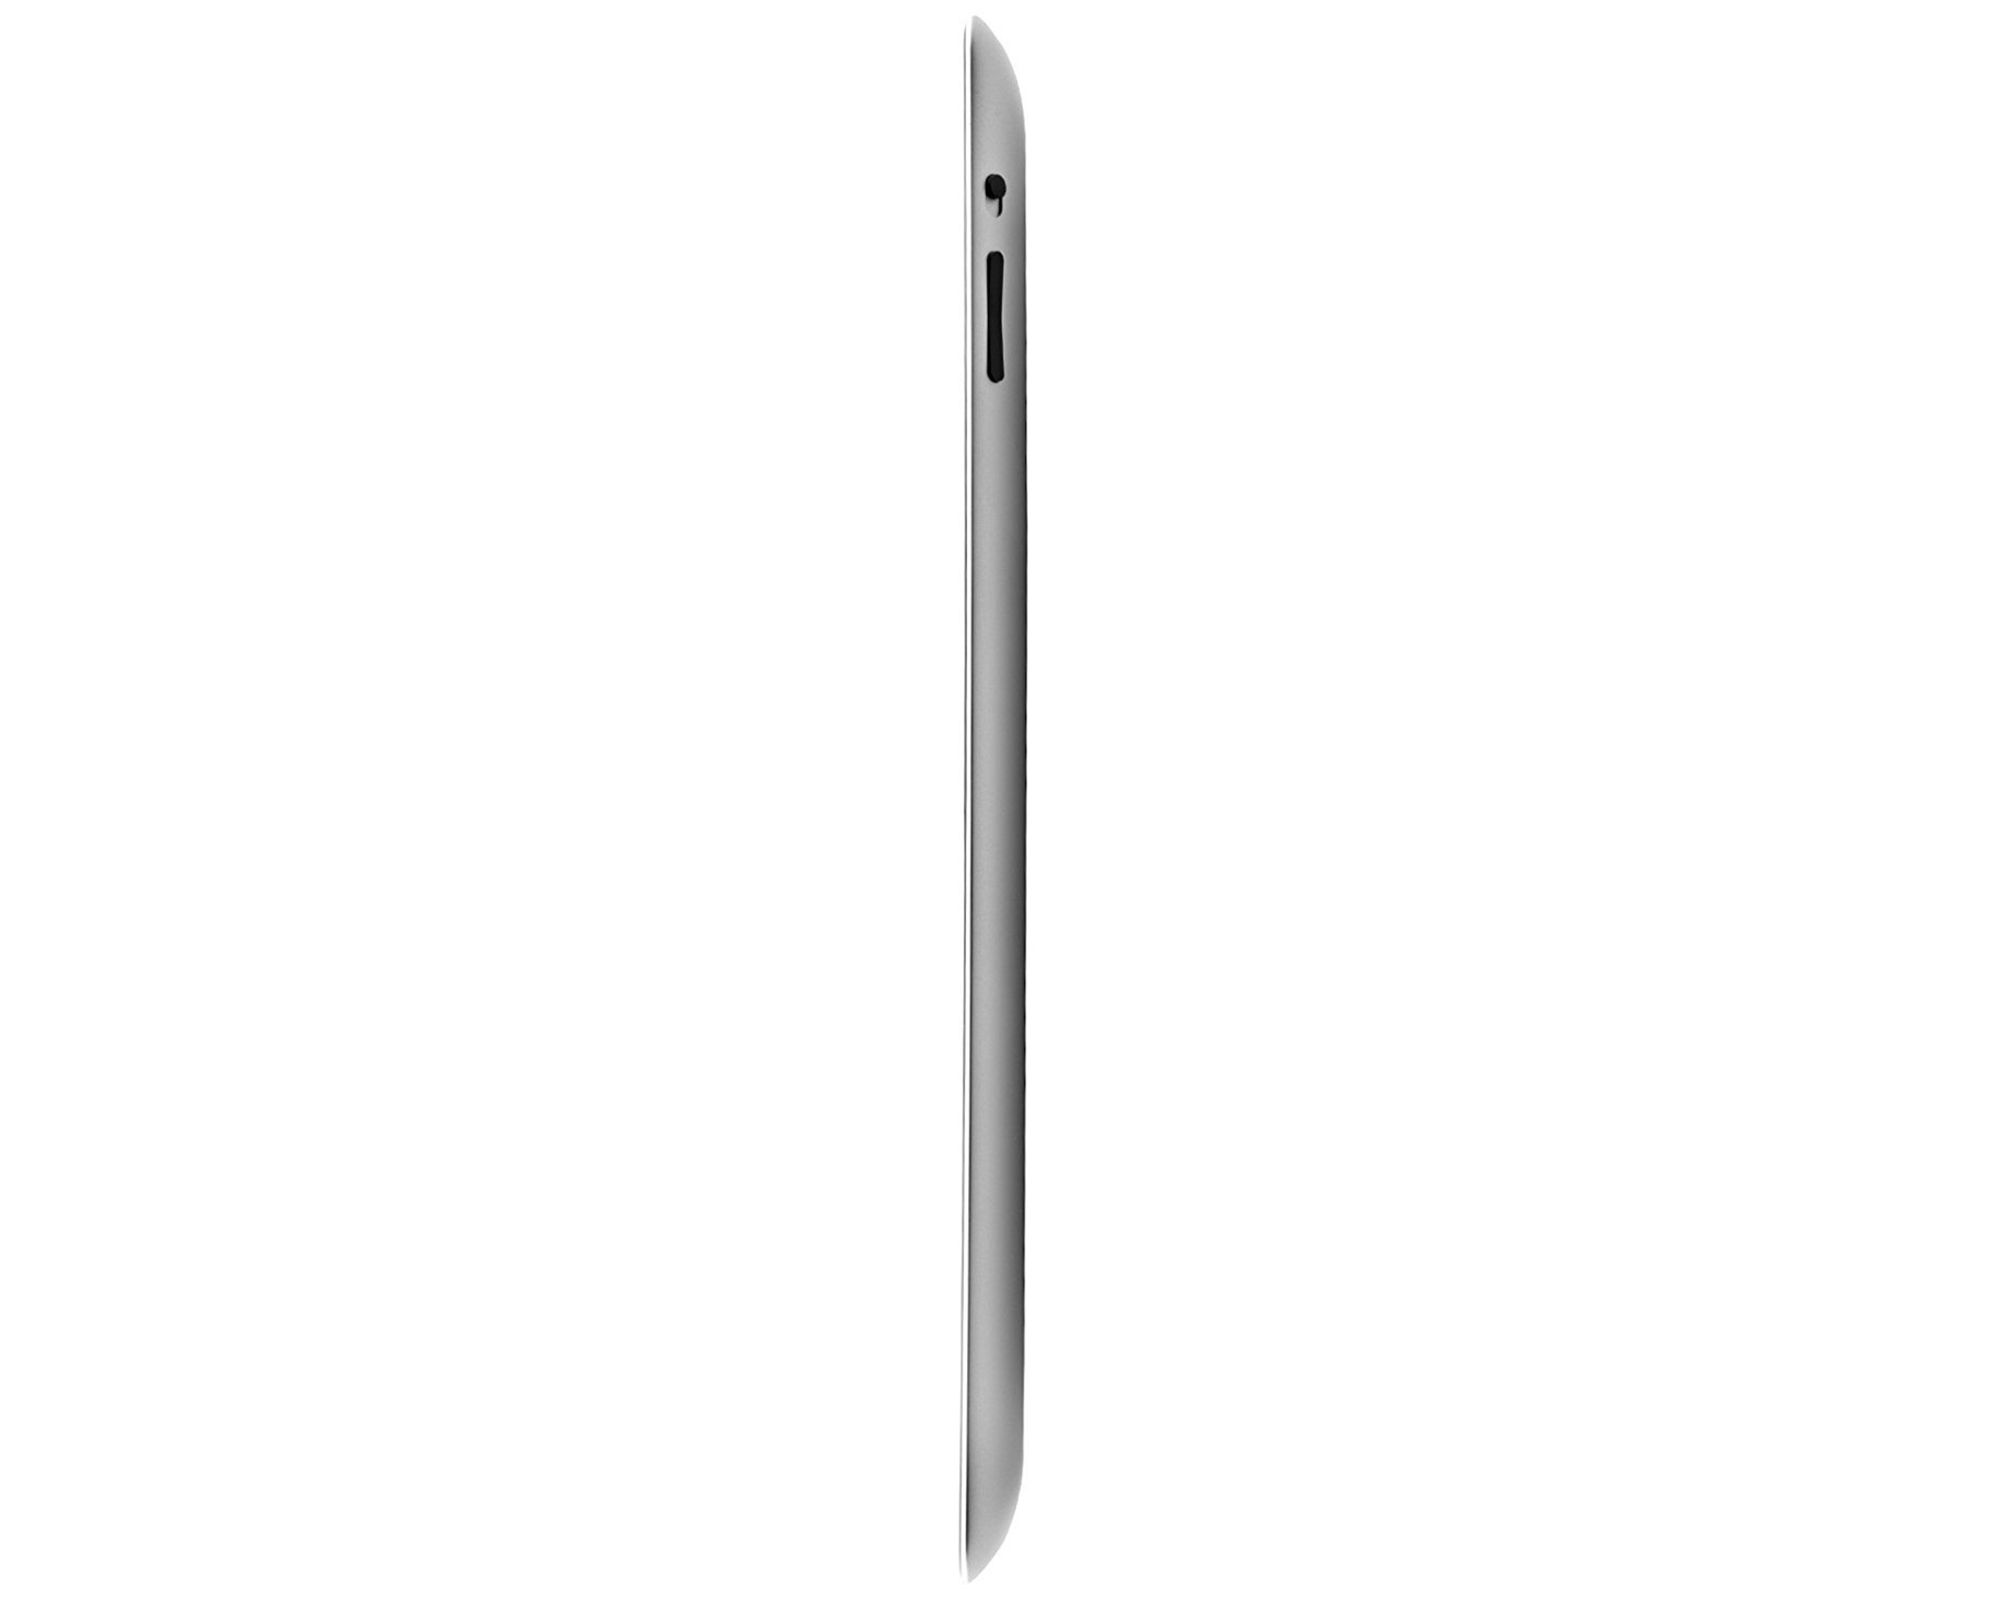 Restored Apple iPad 2 16GB, Wi-Fi, 9.7in - Black - (MC769LL/A) (Refurbished) - image 4 of 4